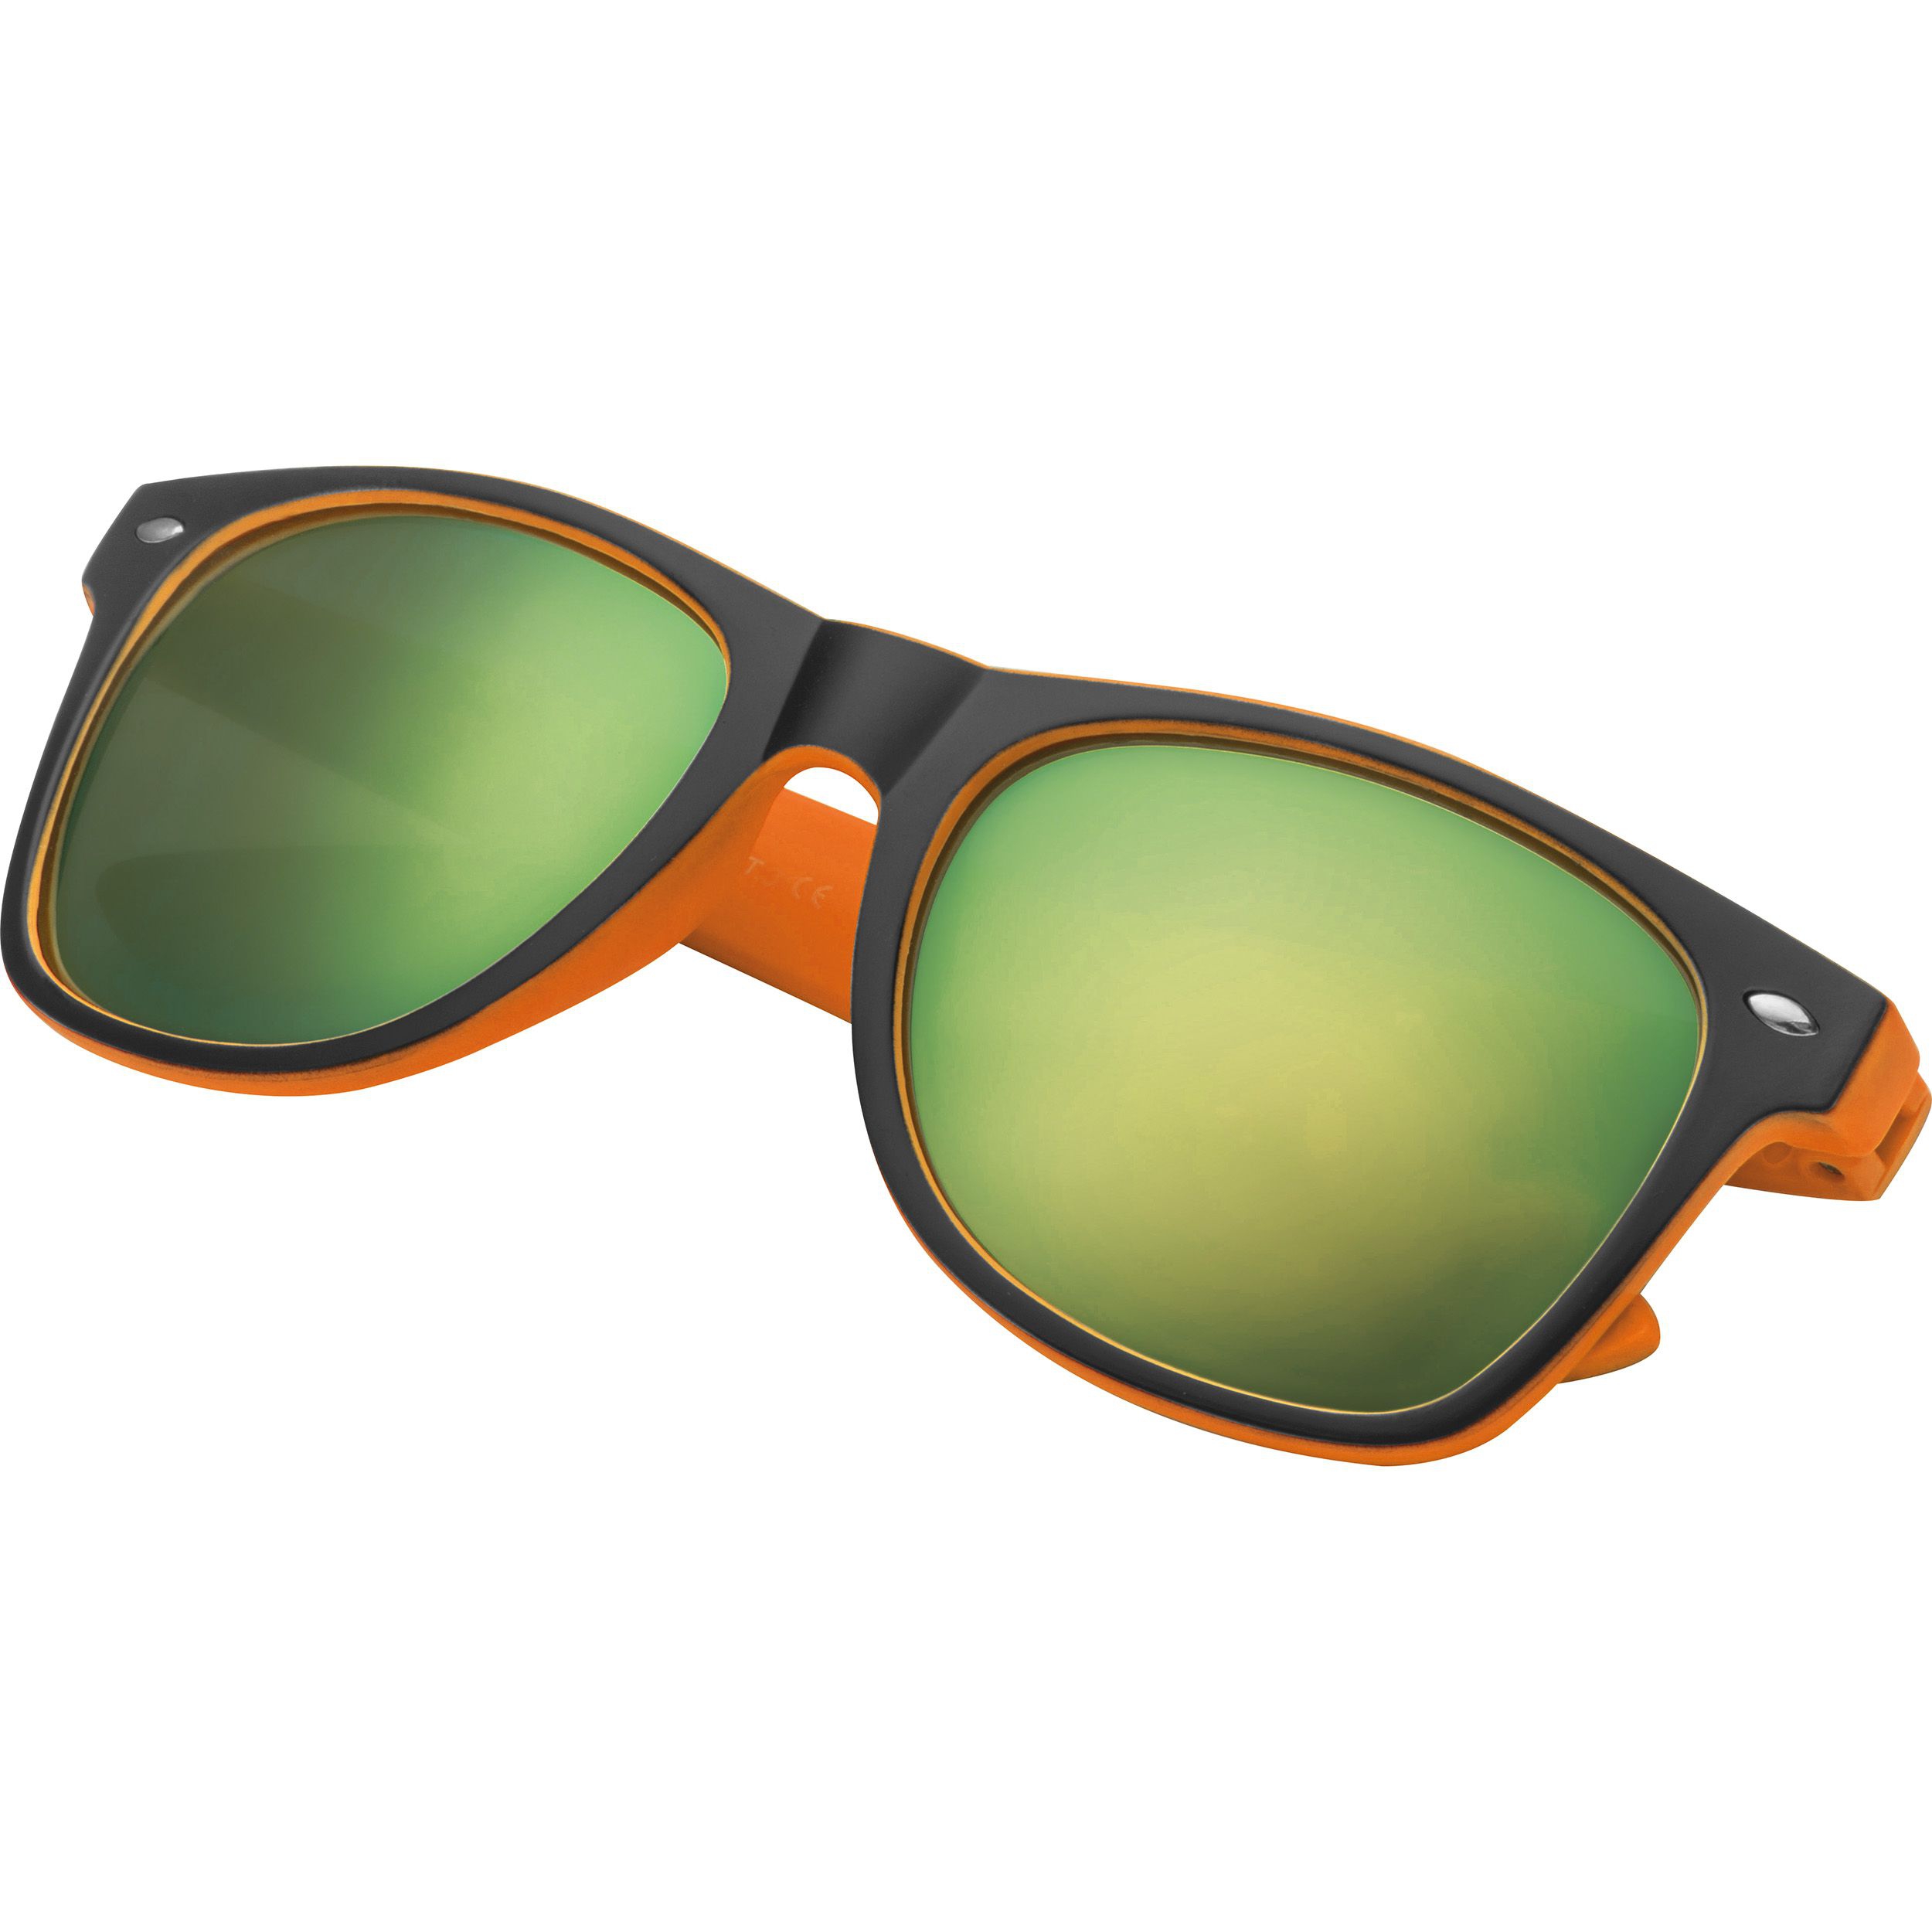 Sonnenbrille aus Kunststoff mit verspiegelten Gläsern, UV 400 Schutz, orange